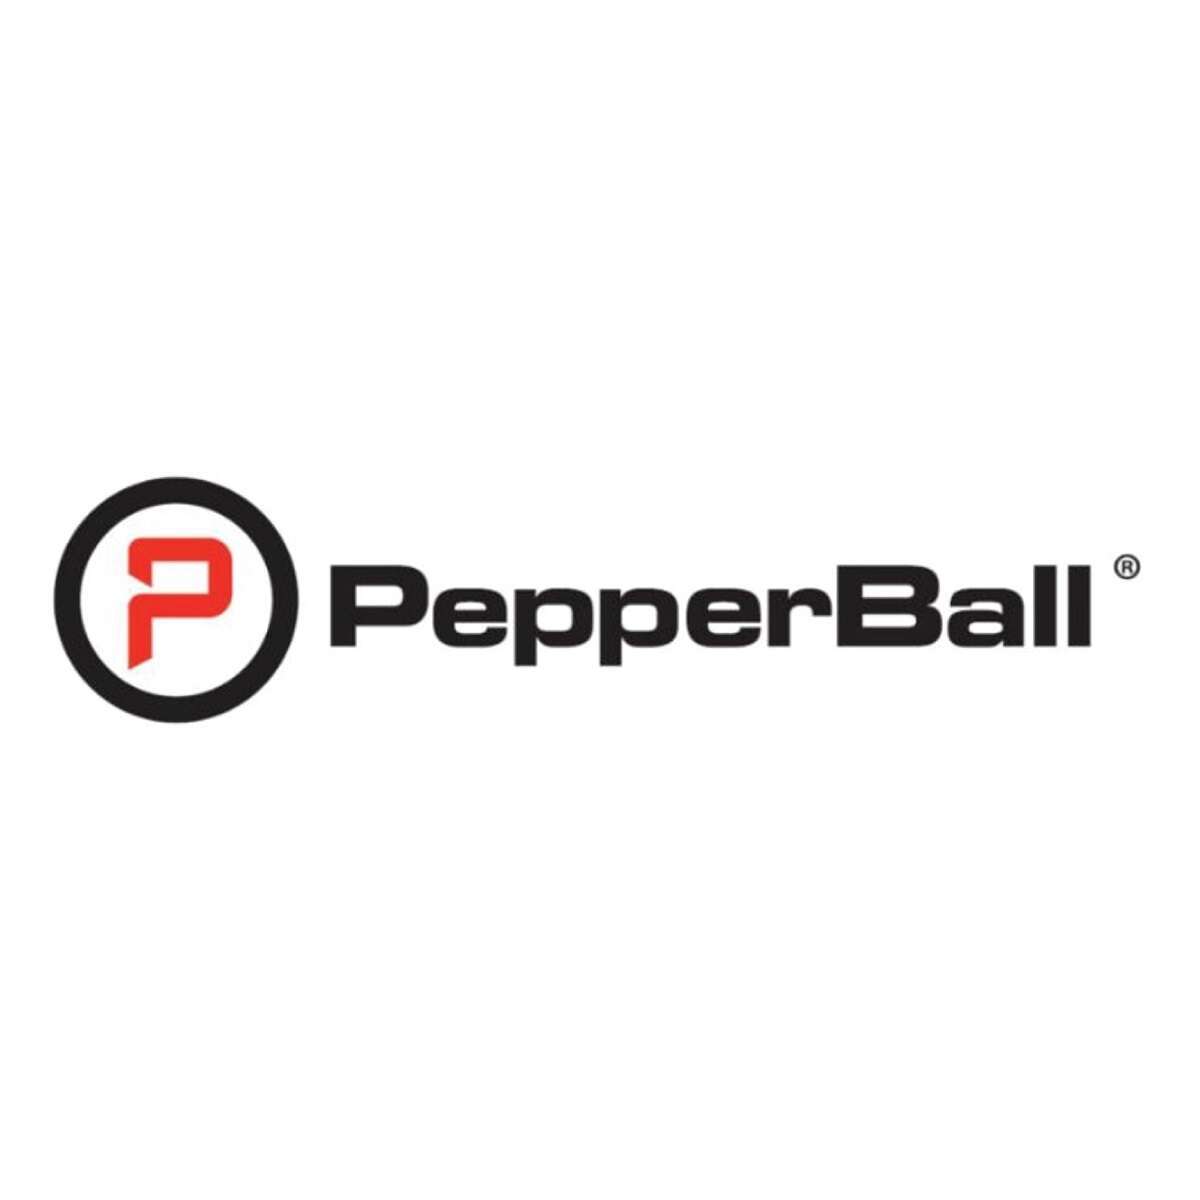 pepperball brand logo